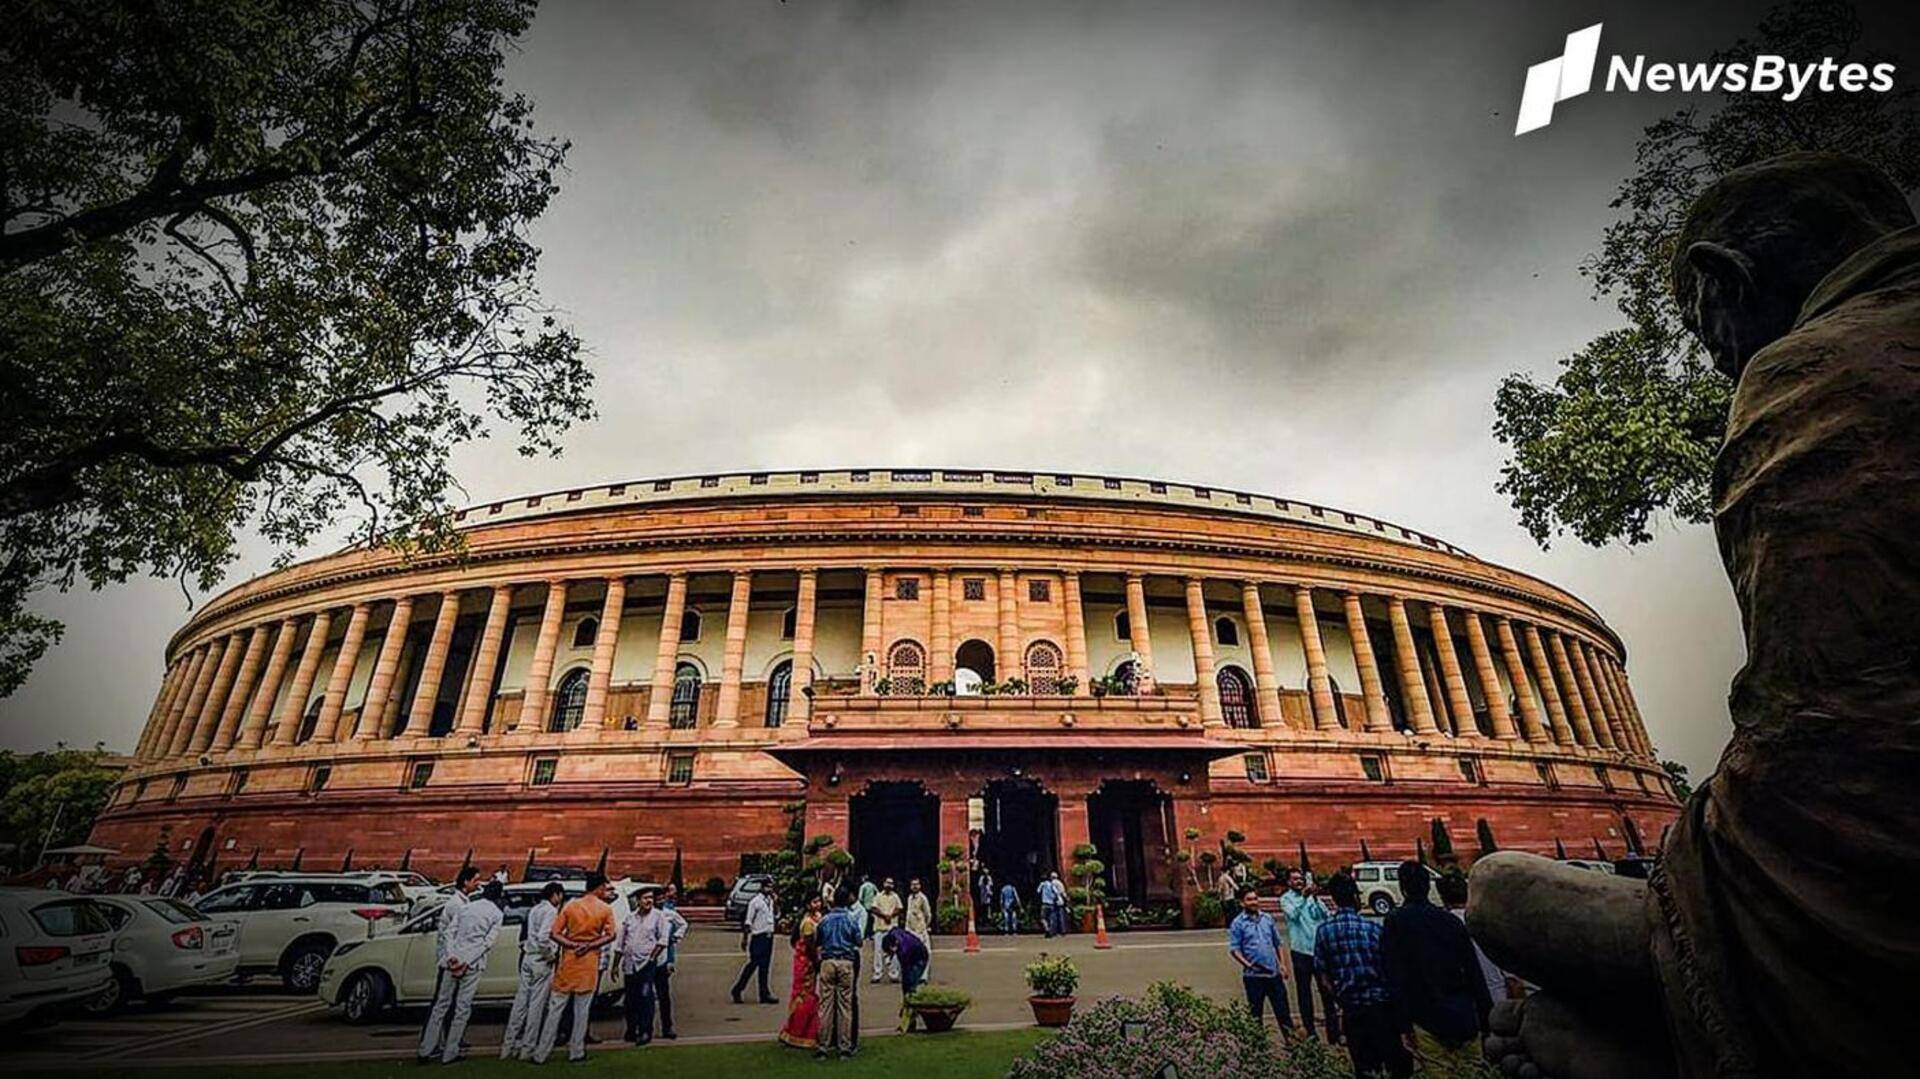 नई संसद के उद्घाटन से पहले कांग्रेस ने याद किया पुरानी संसद का इतिहास, देखें वीडियो